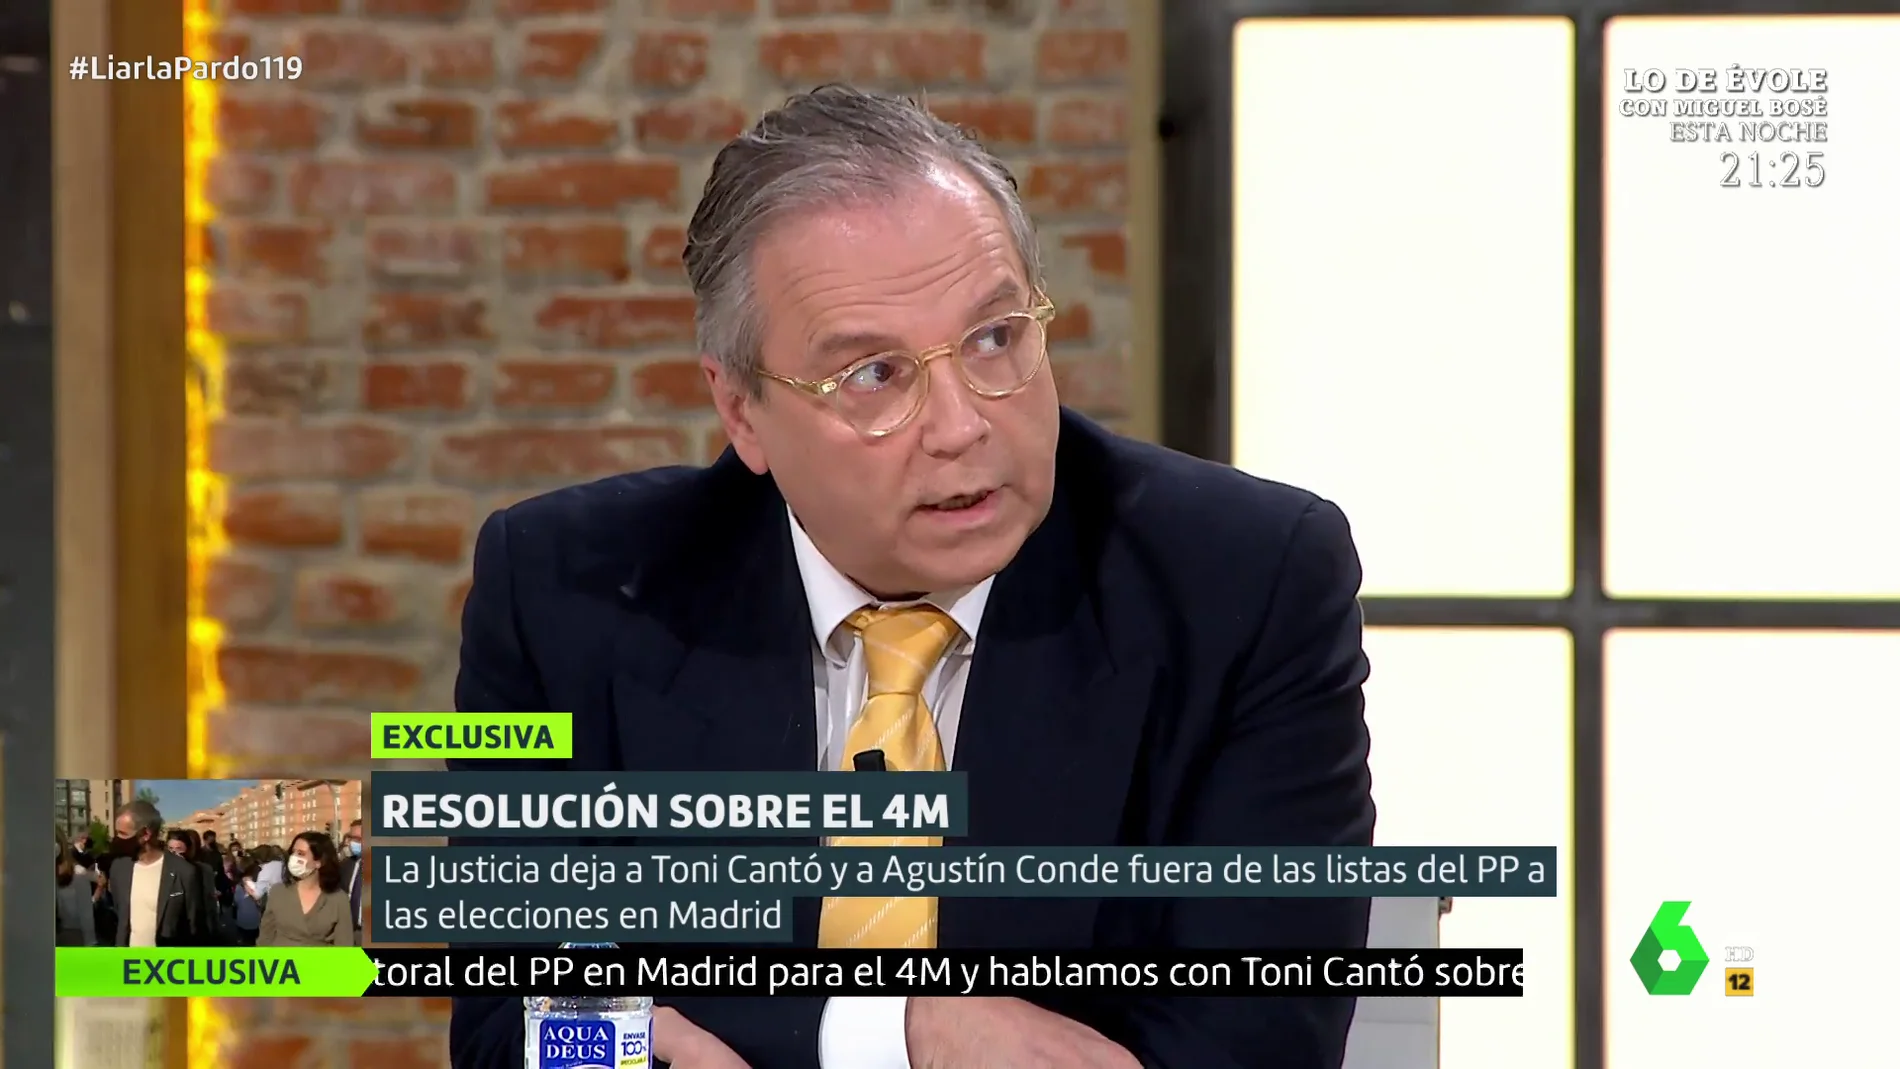 La advertencia de Antonio Miguel Carmona: "Probablemente hay una tercera persona en la lista del PP en situación irregular"